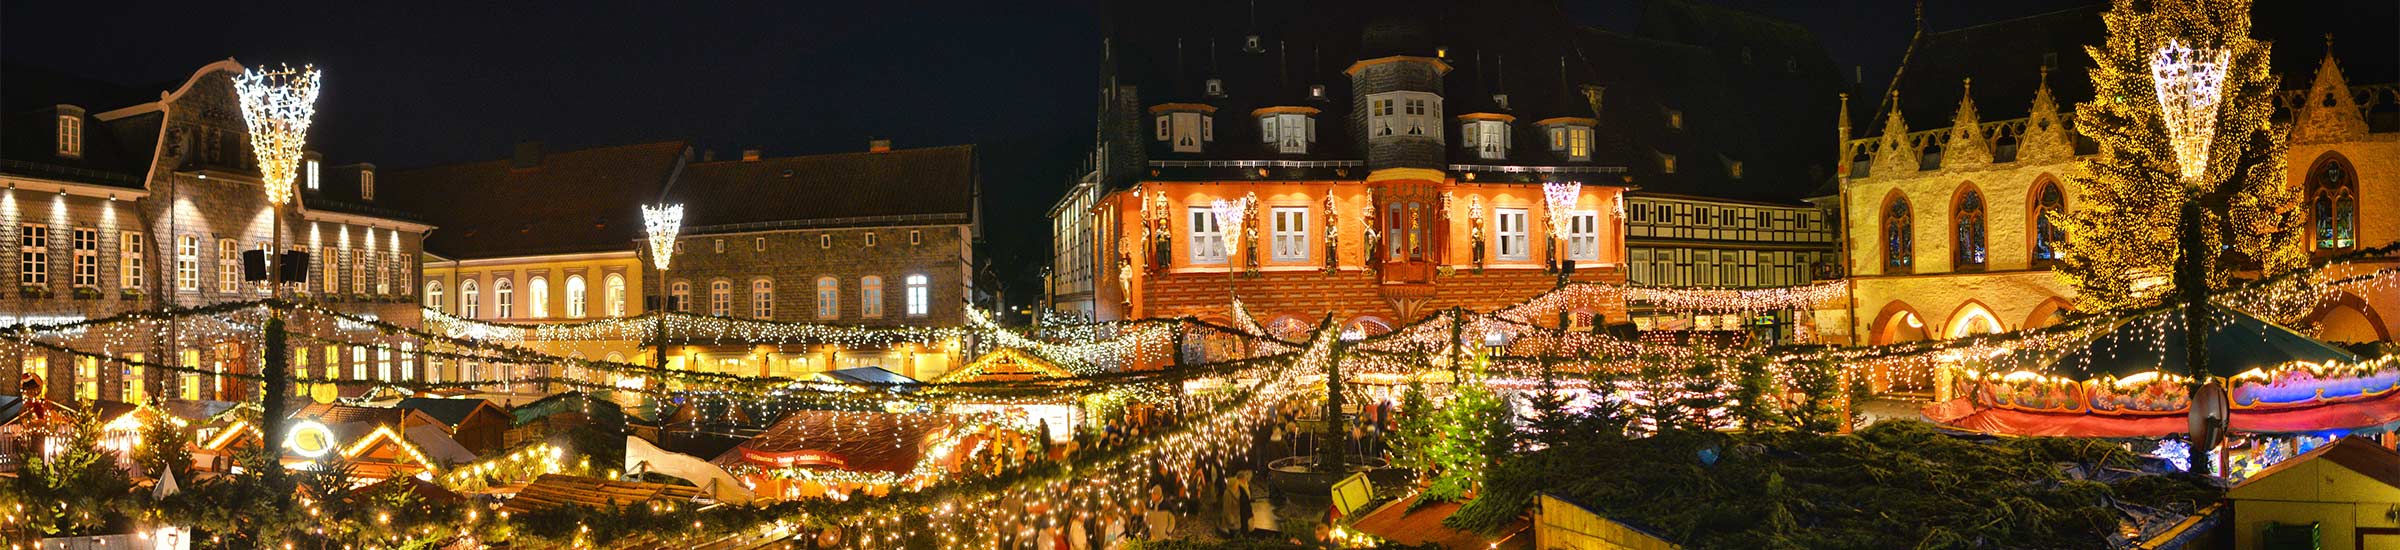 Blick auf den Weihnachtsmarkt in Goslar